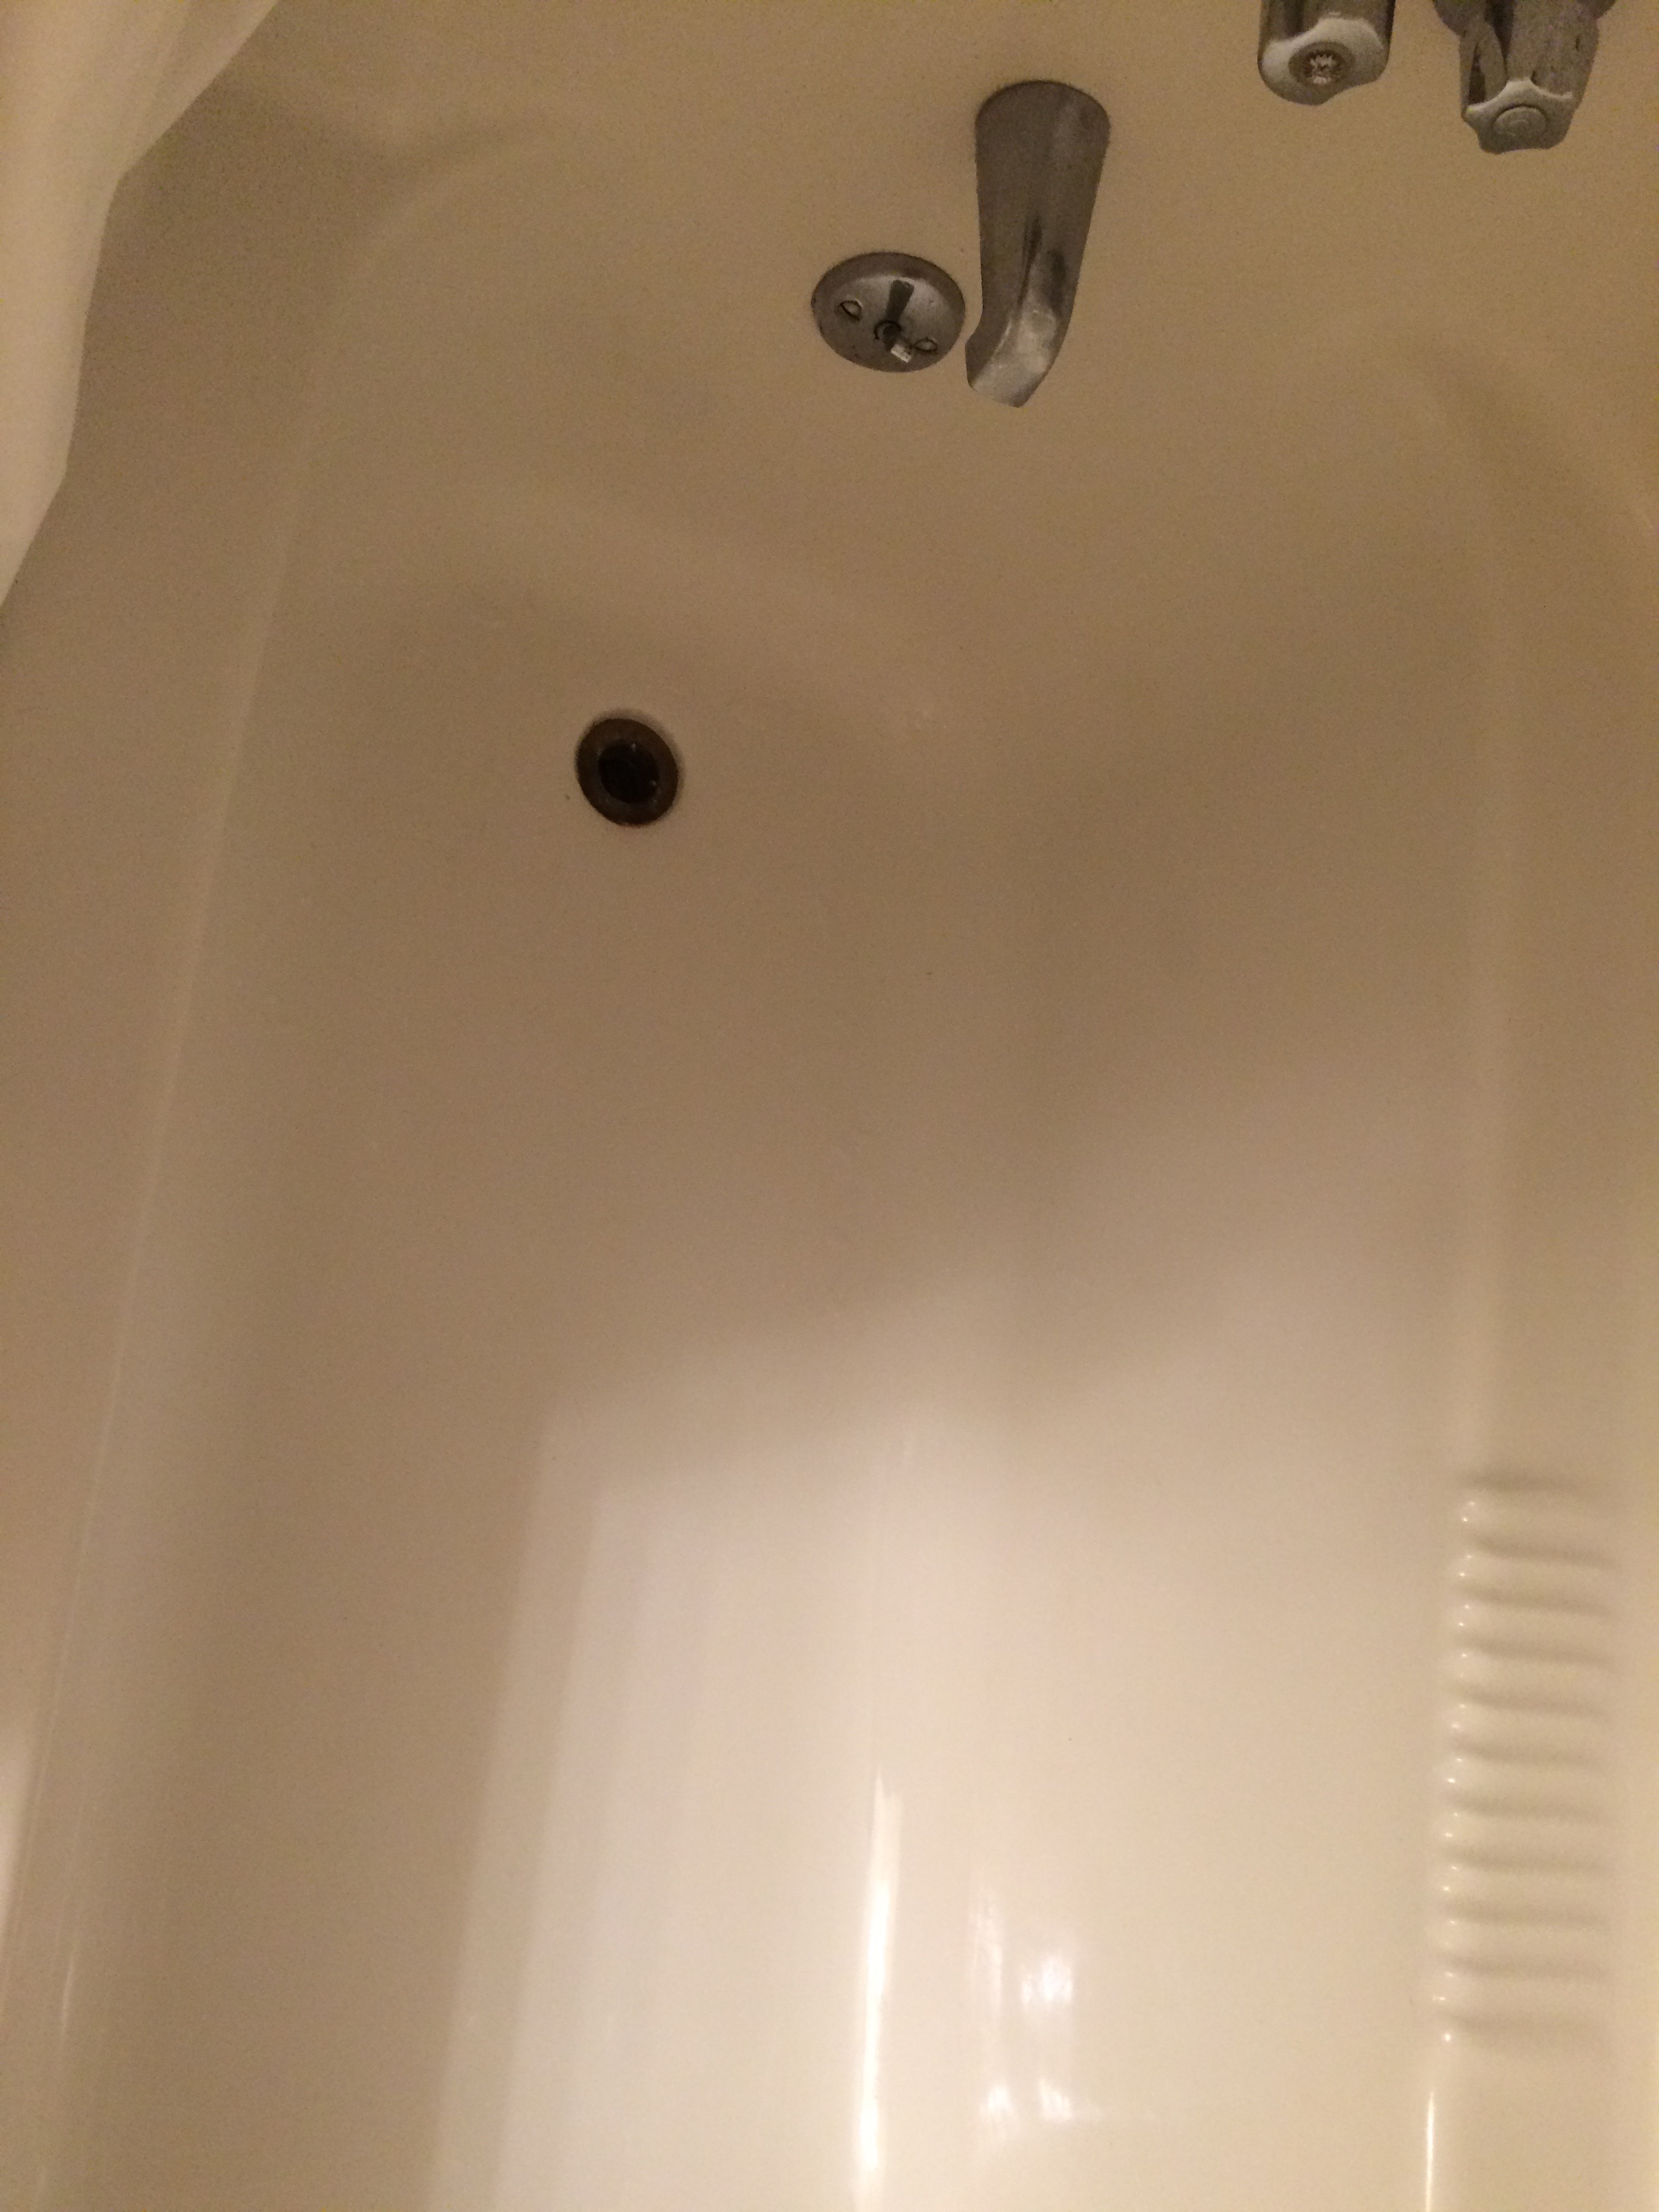 Cleaned tub